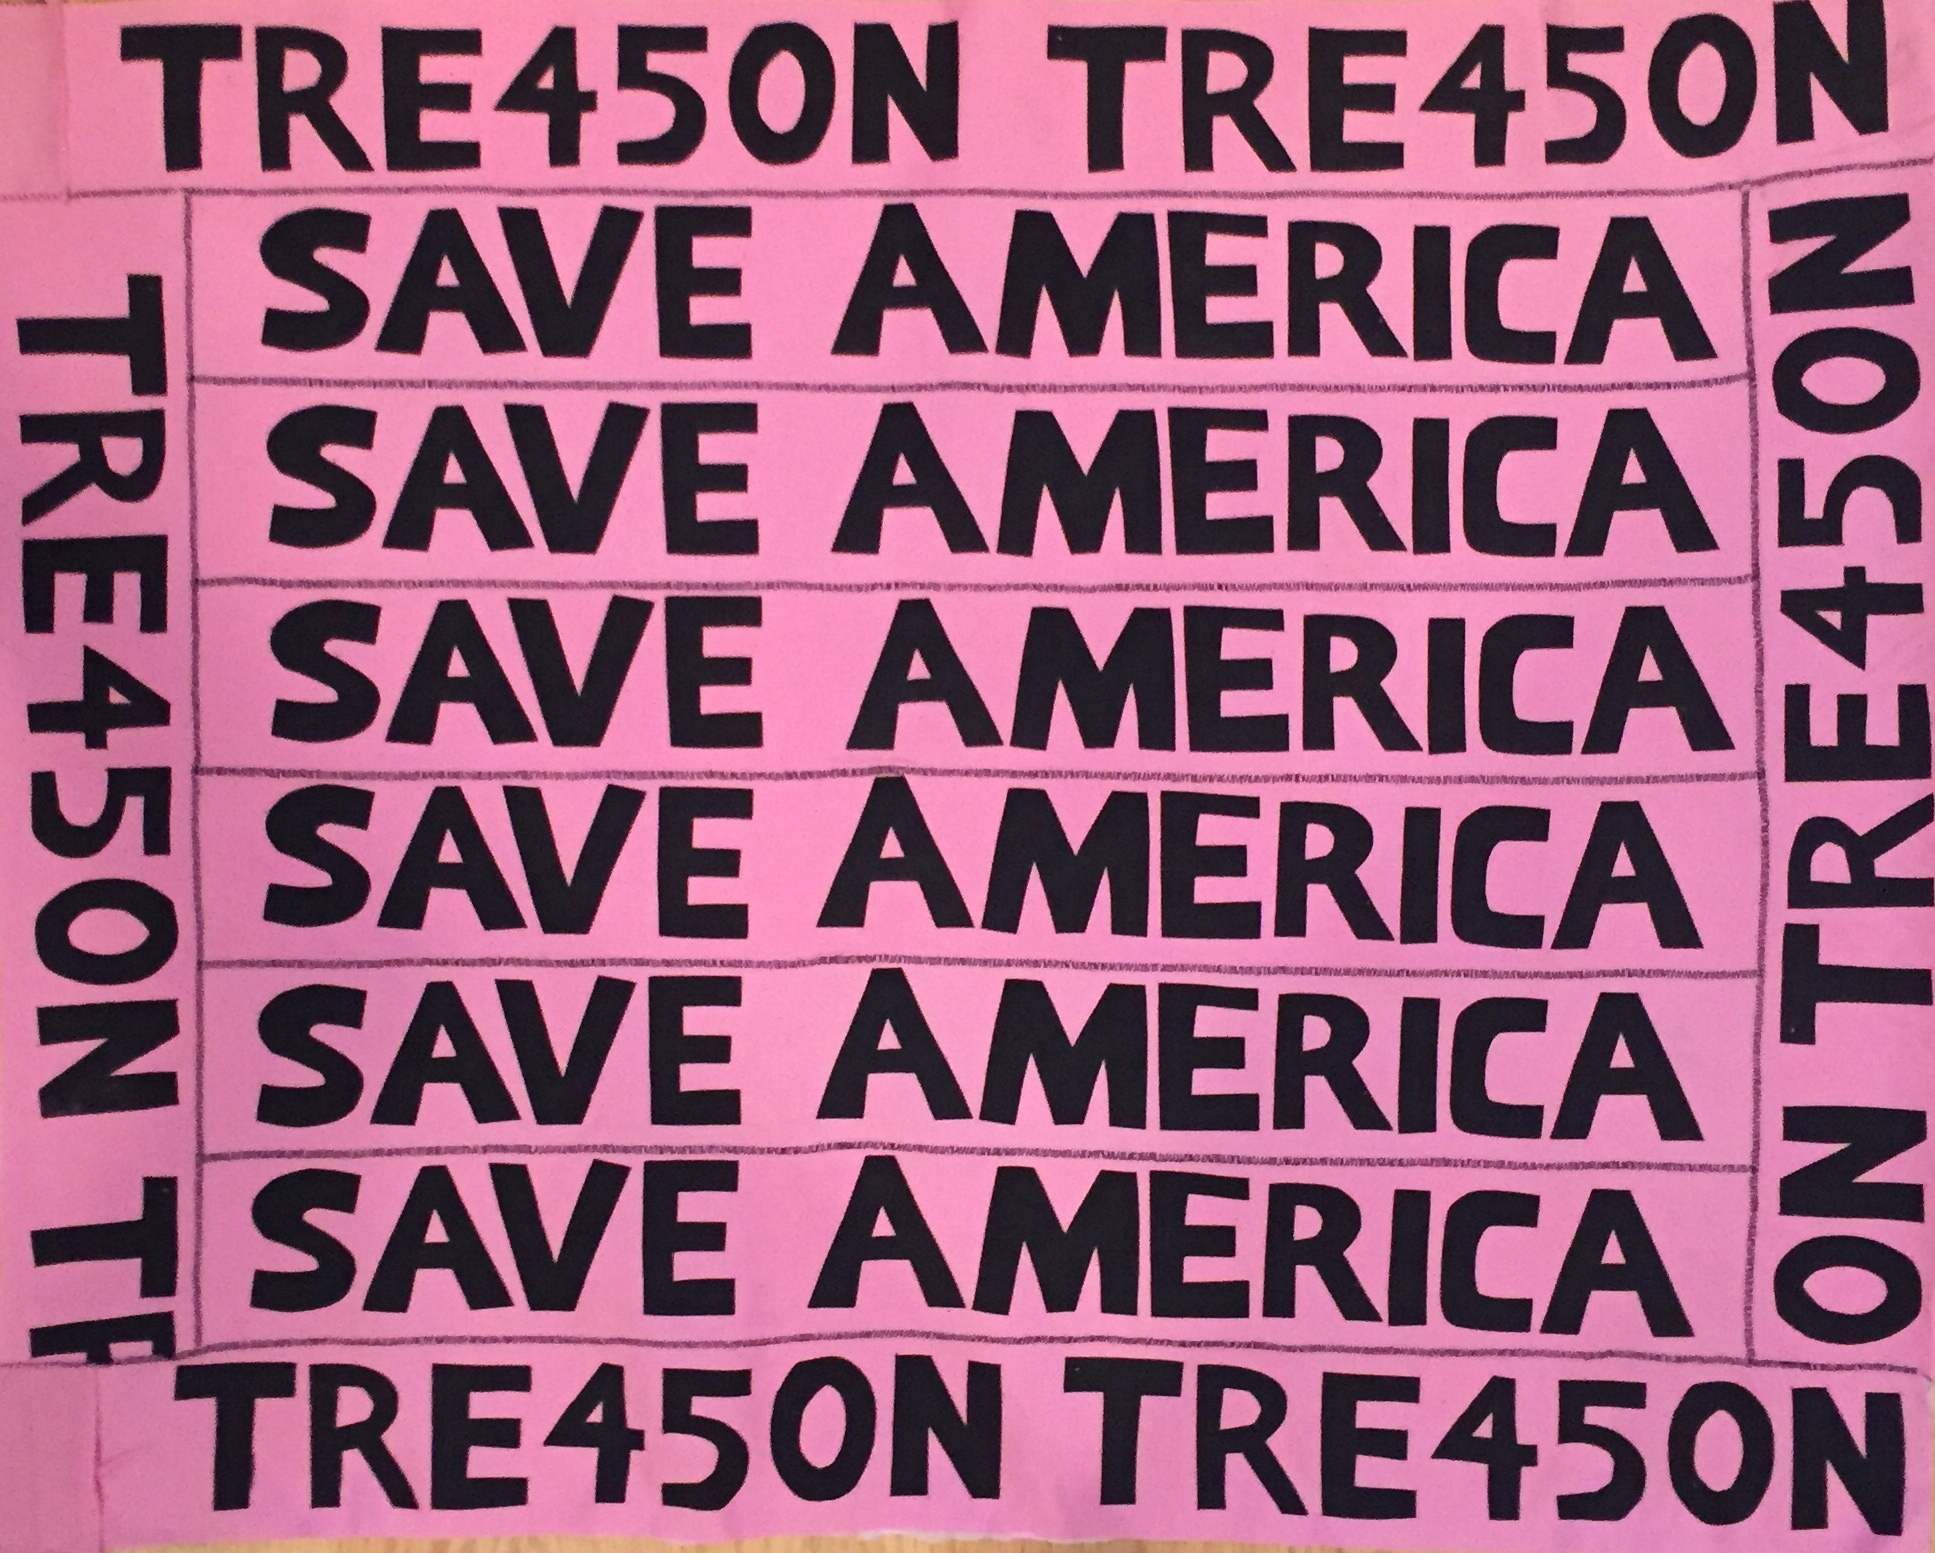 2018/SaveAmerica